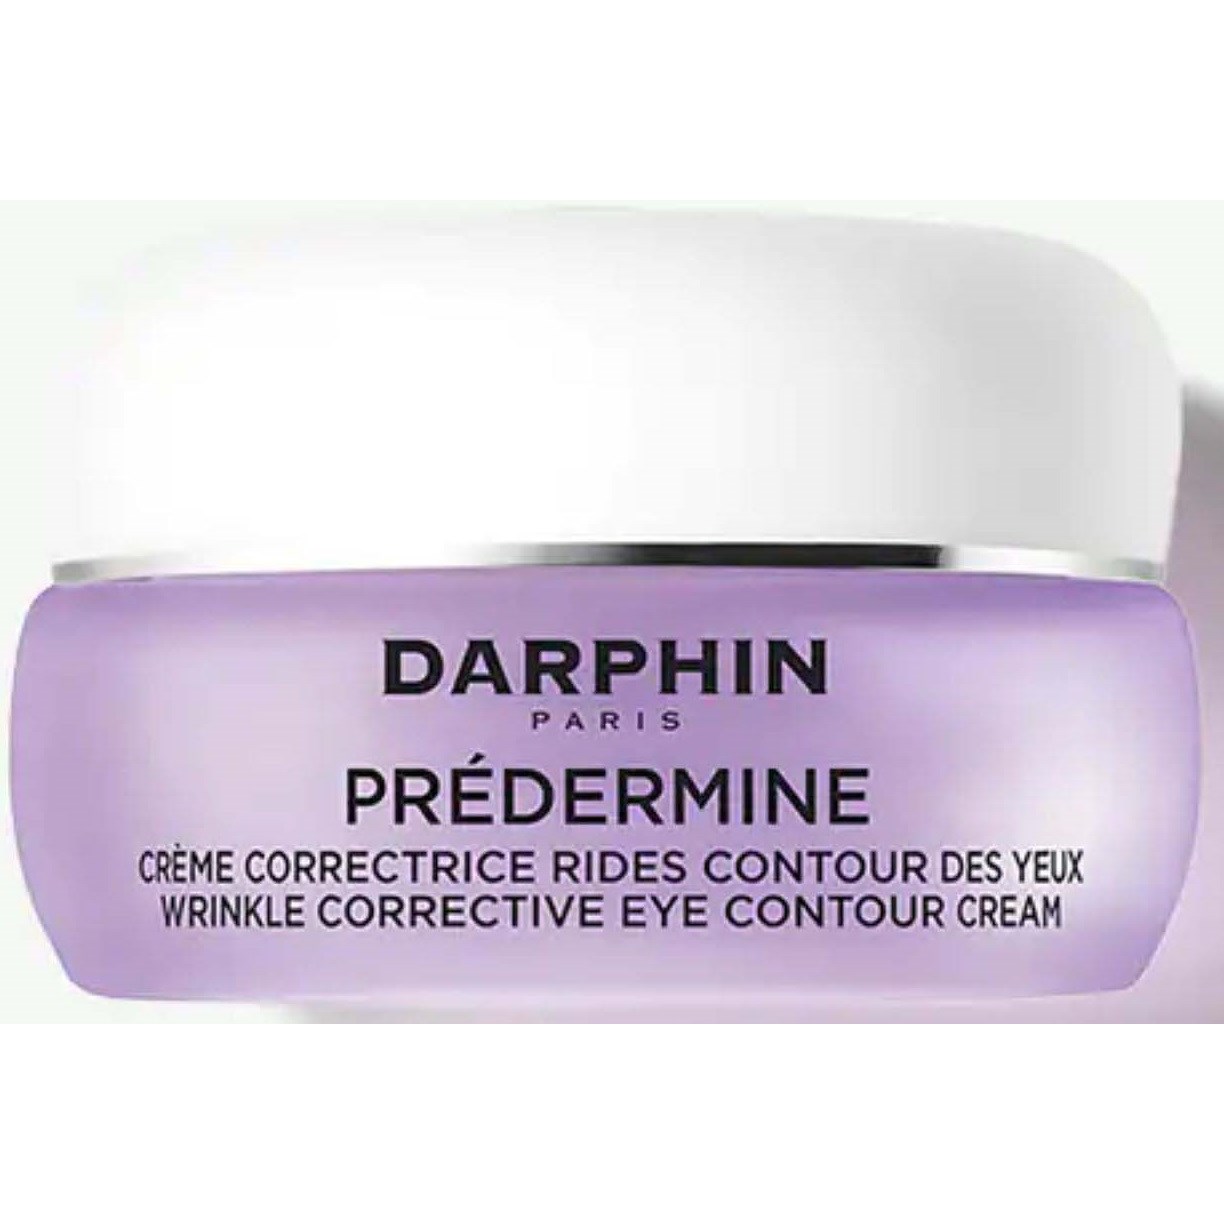 Zdjęcia - Kremy i toniki Darphin Prédermine Wrinkle Corrective Eye Contour Cream 15 ml 